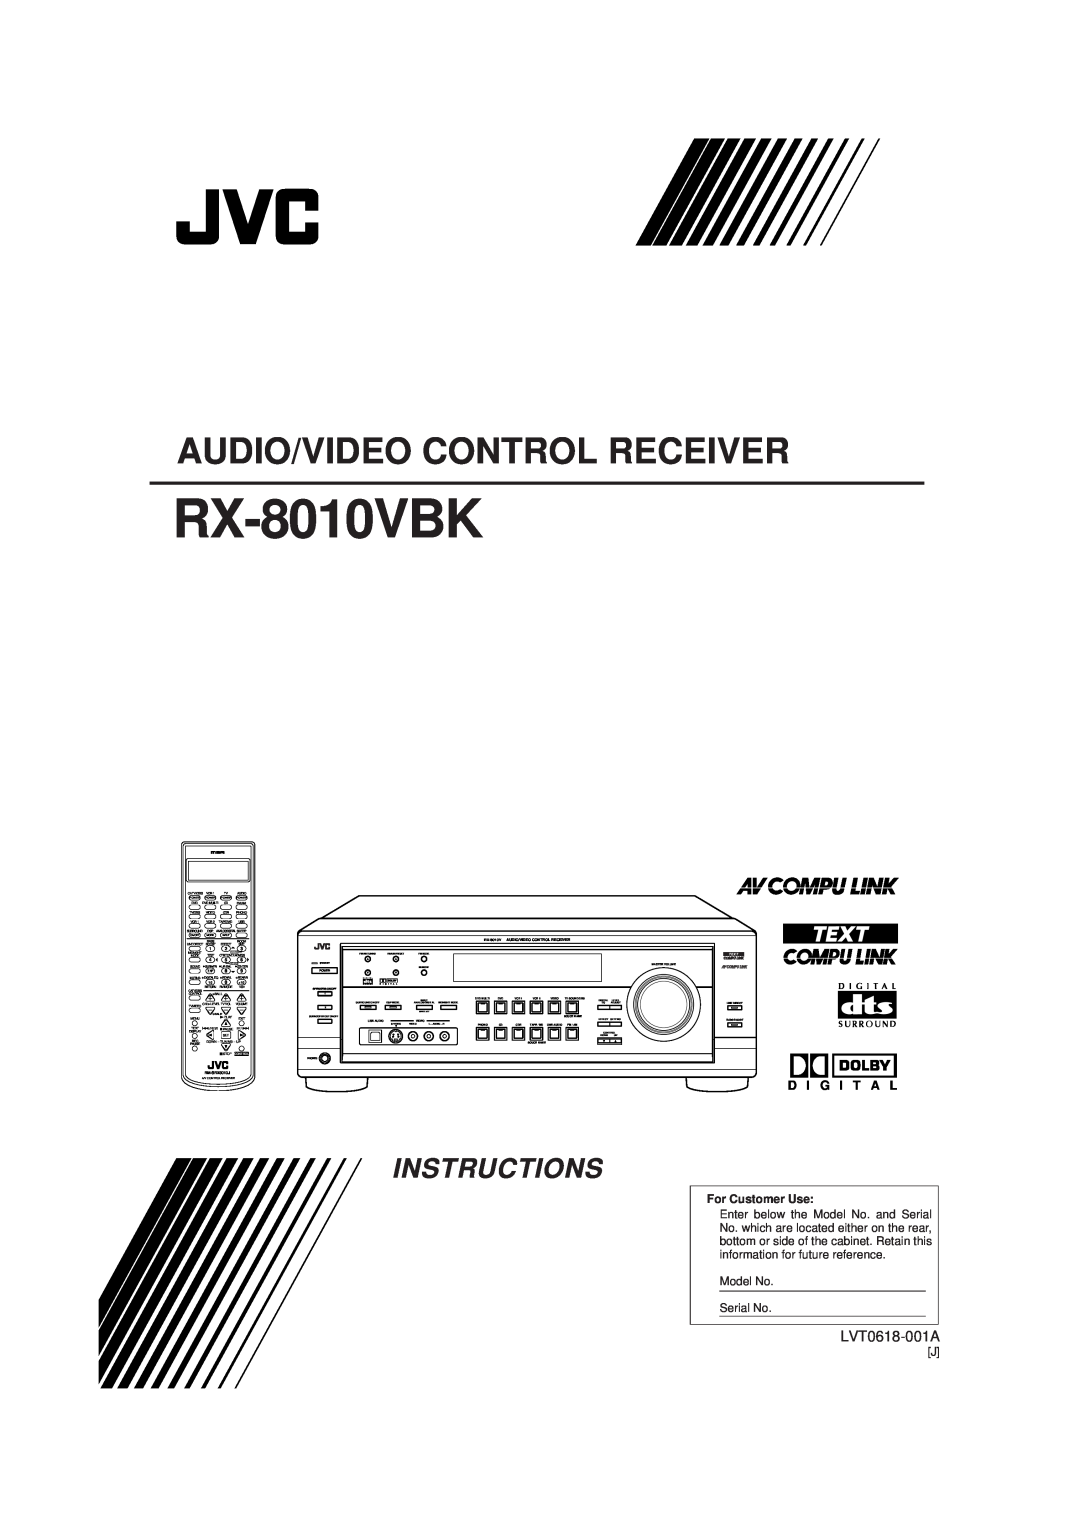 JVC rx-8010vbk manual RX-8010VBK, Audio/Video Control Receiver, Instructions, LVT0618-001A, D I G I T A L 